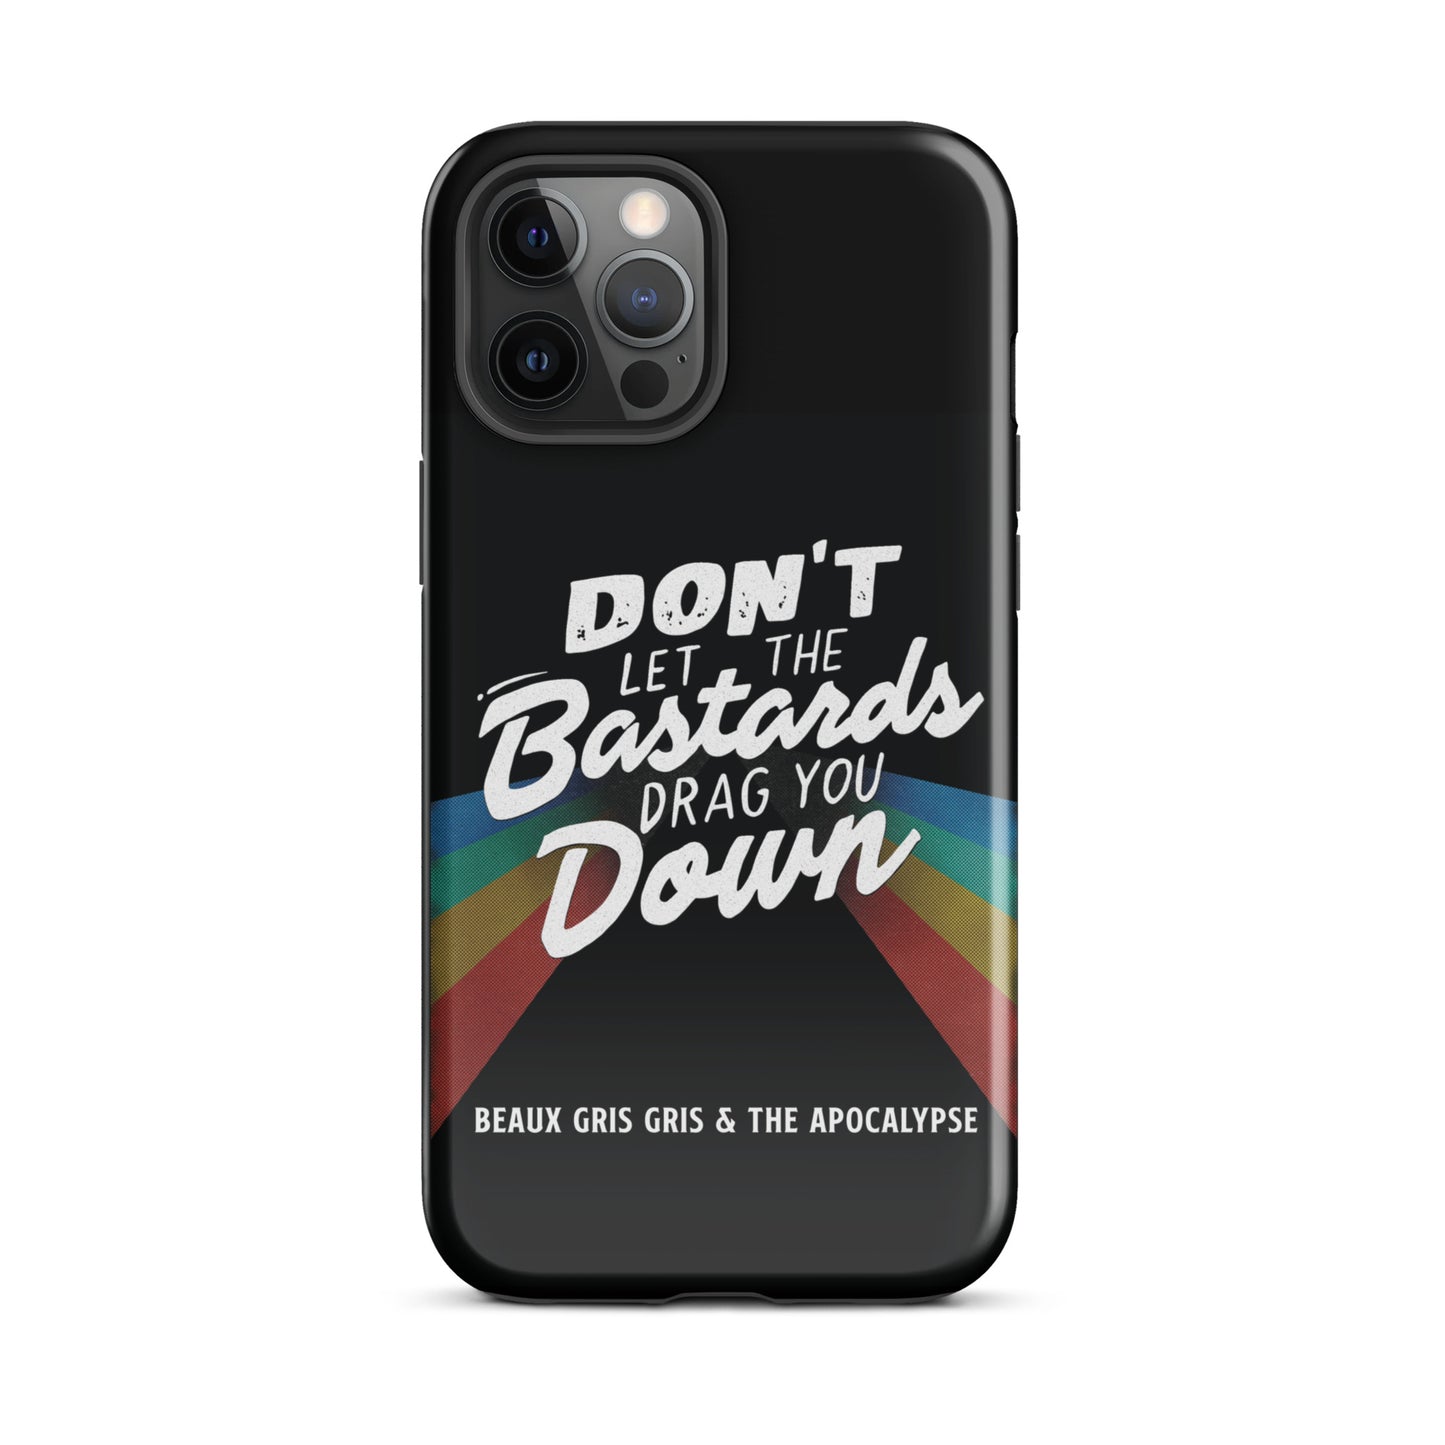 Beaux Gris Gris "Bastards" Tough Case for iPhone®